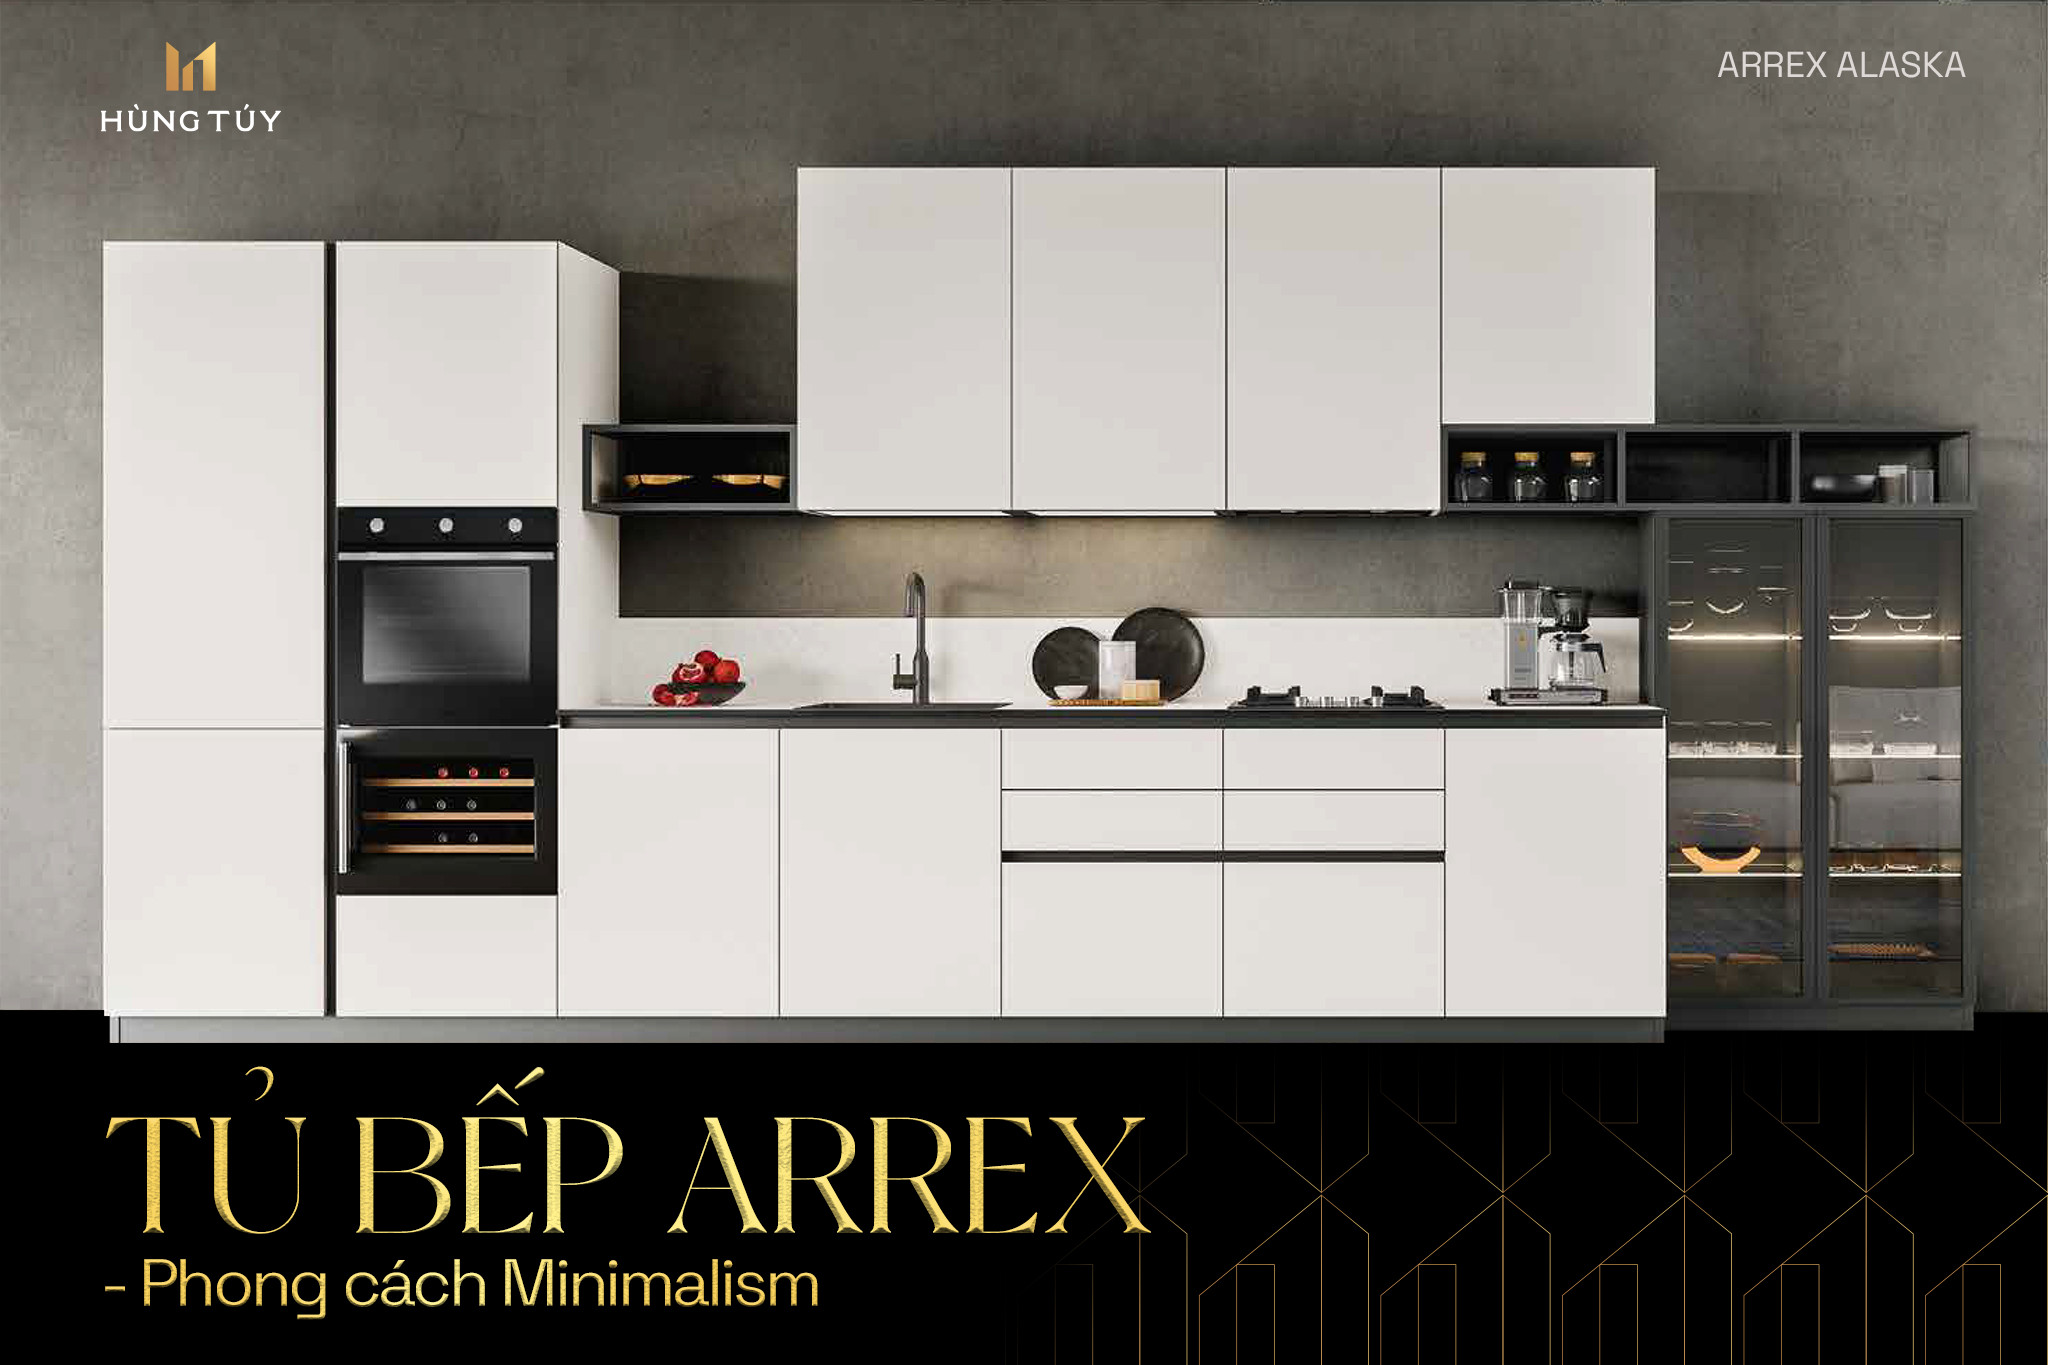 Tủ bếp Arrex - Bước ra từ lằn ranh tinh tế và hiện đại trong phong cách Minimalism